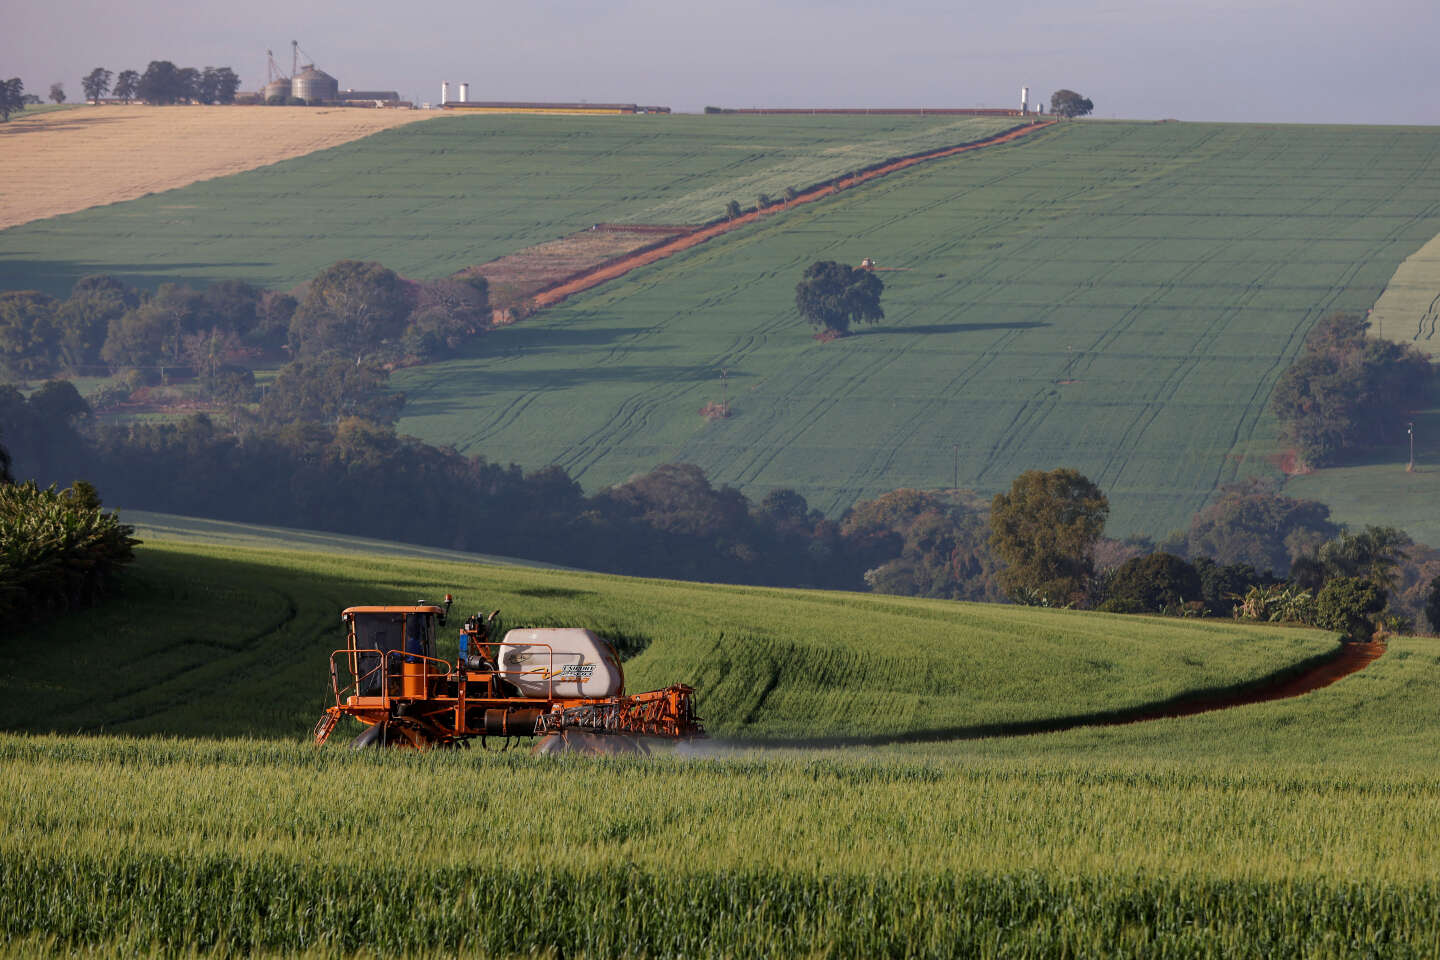 Frankrijk blijft duizenden tonnen zeer giftige pesticiden exporteren, ondanks een verbod op de praktijk